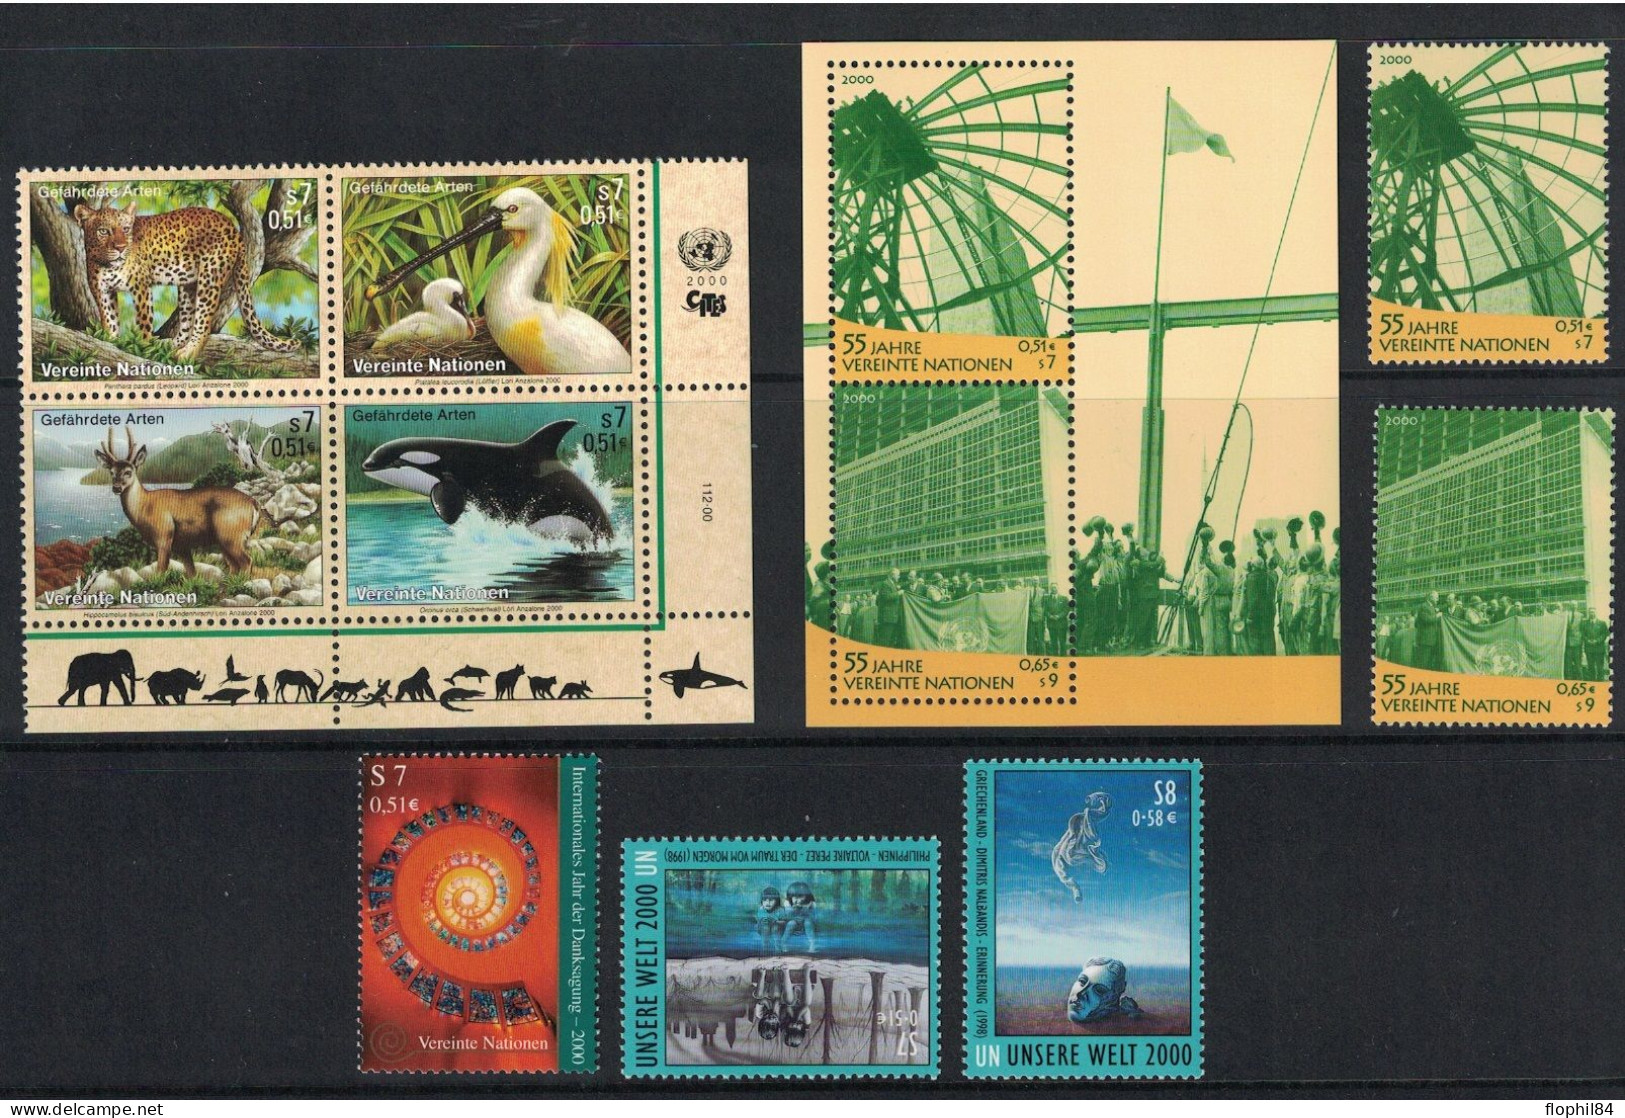 NATIONS UNIES - VIENNE - ENSEMBLE DE TIMBRES BLOCS DE L'ANNEE 2000 - NEUF - FACIALE 6€ - Unused Stamps